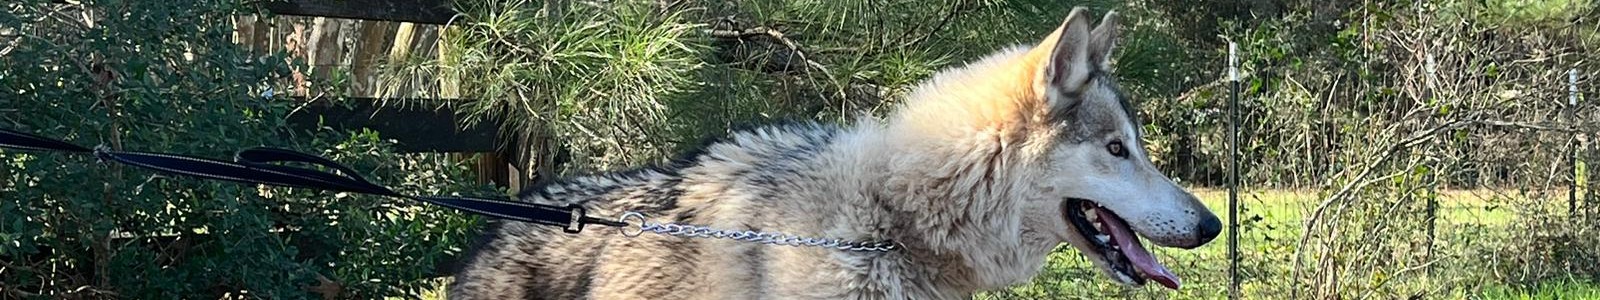 Texas Wolfdog Project Owning a Wolfdog Header Image